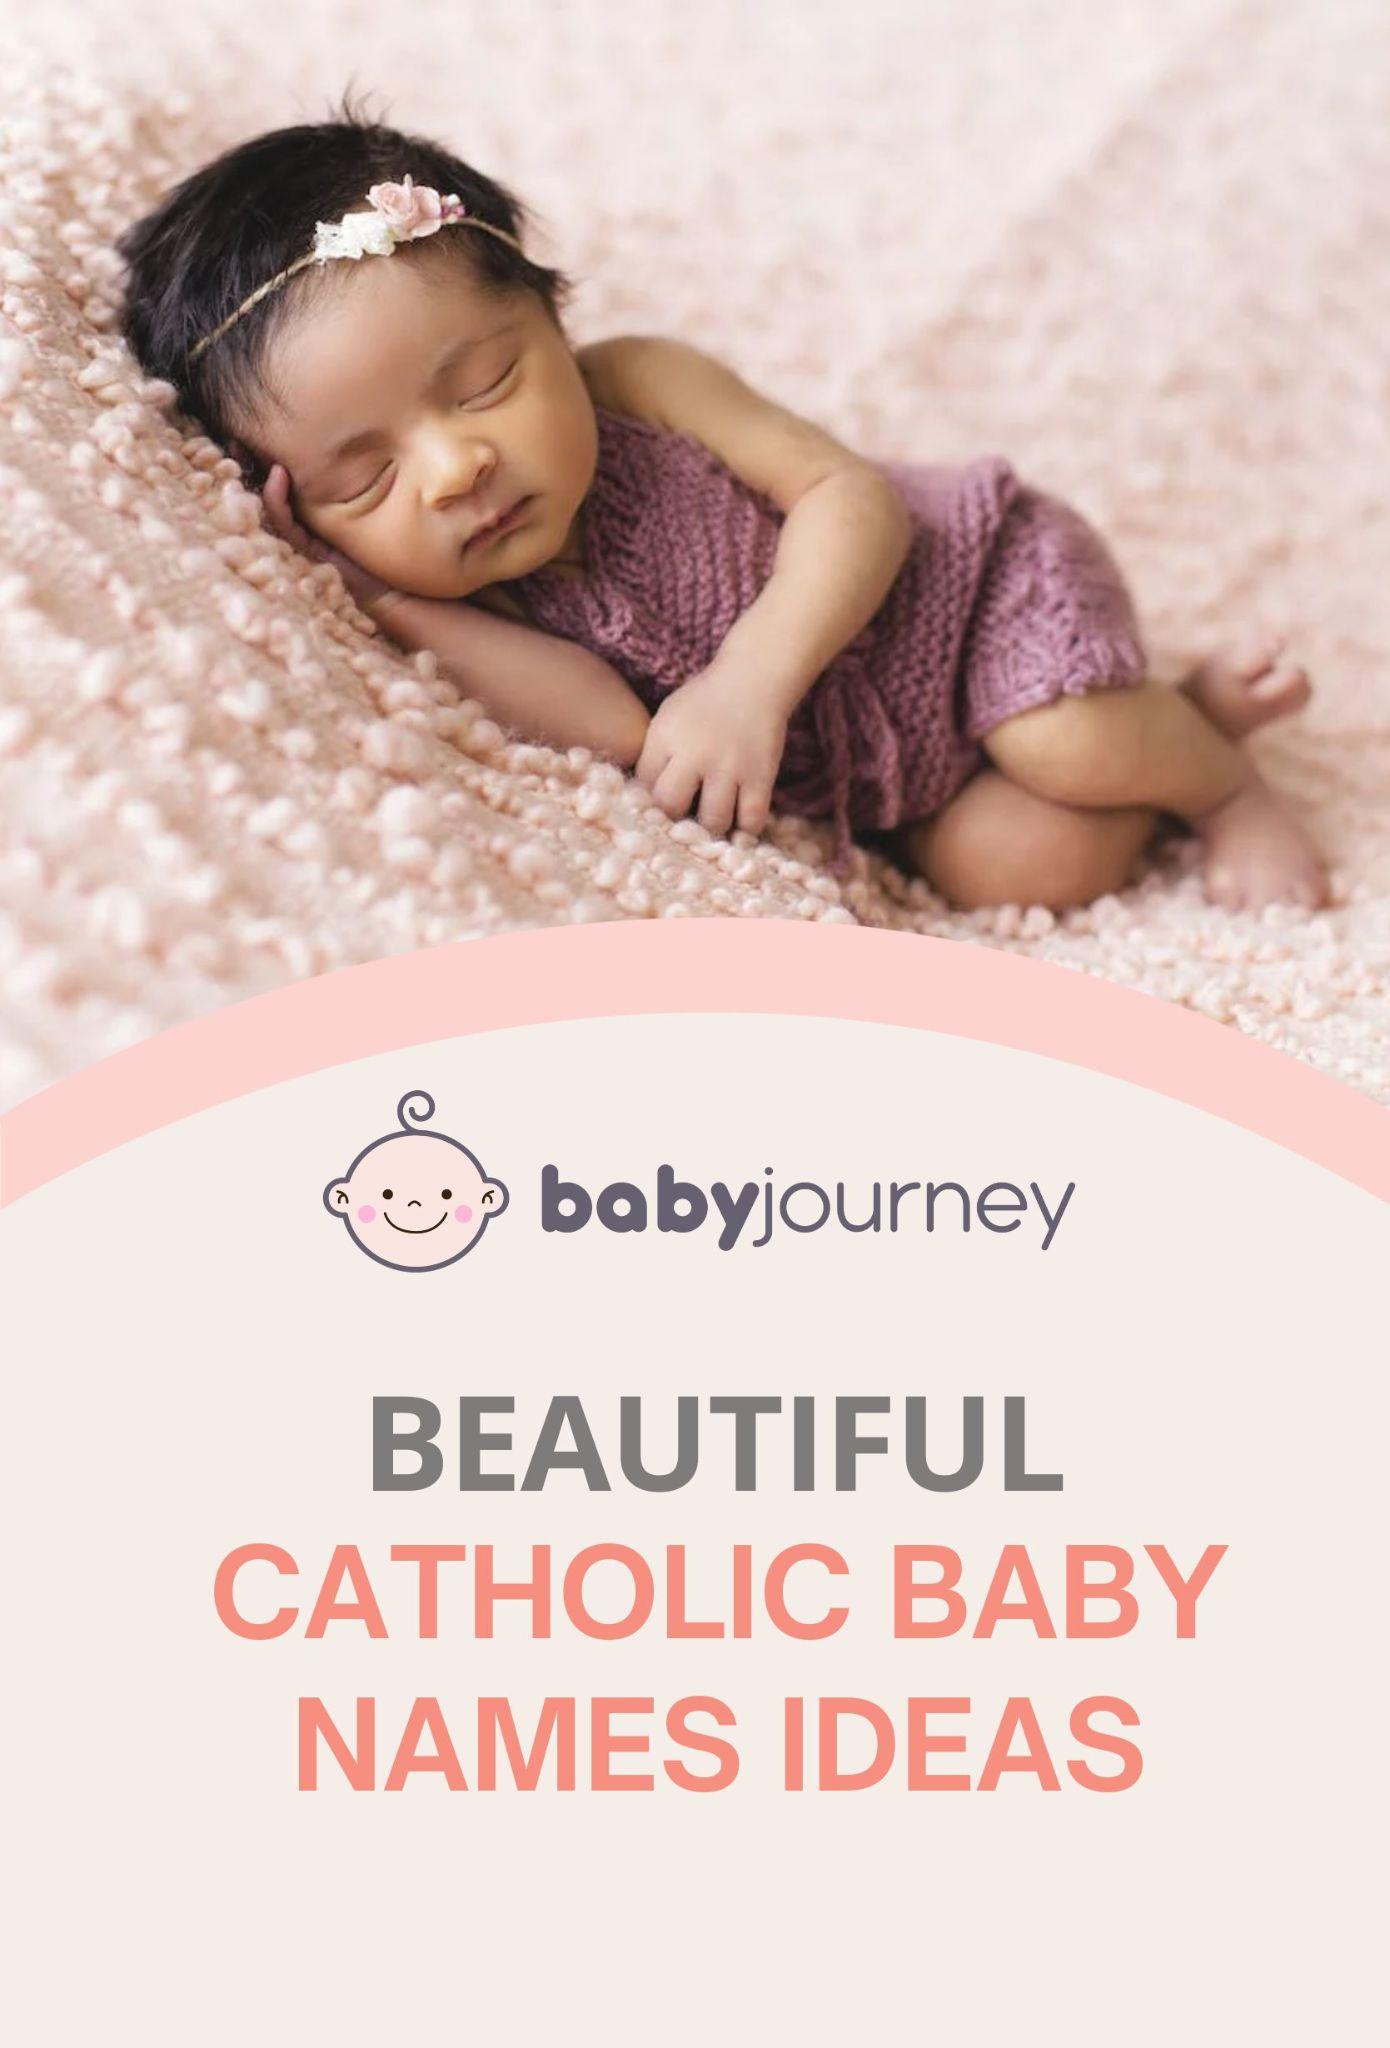 Beautiful Catholic Baby Names Ideas pinterest - Baby Journey